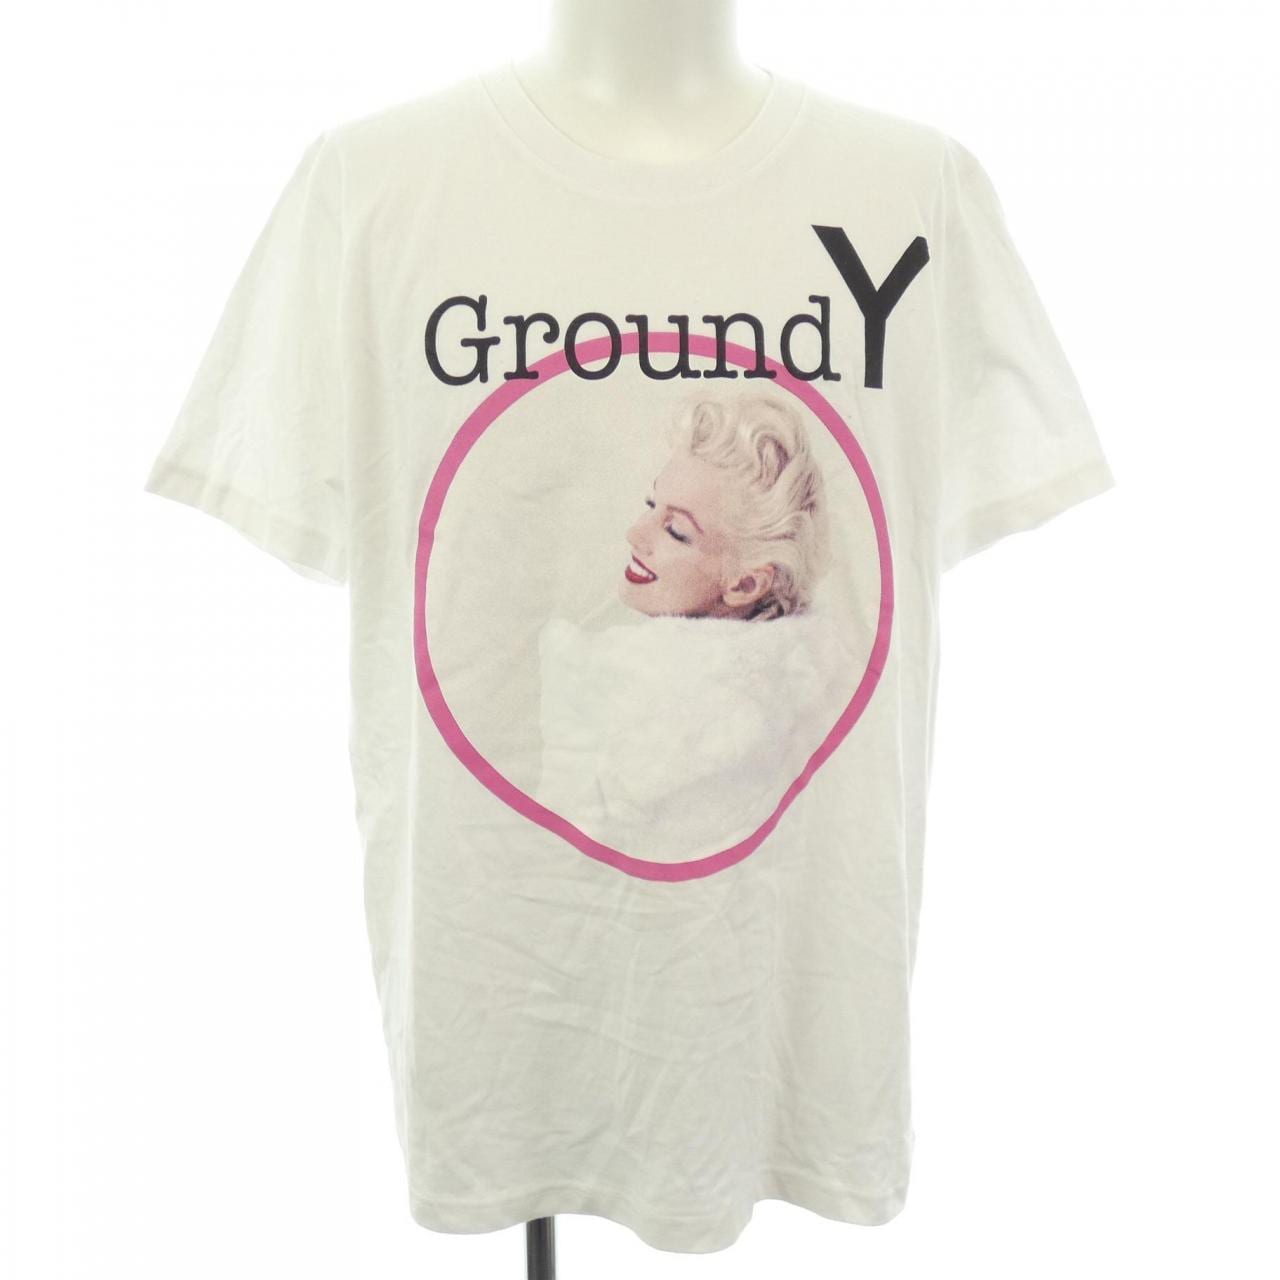 Ground Y GROUND Y Tops